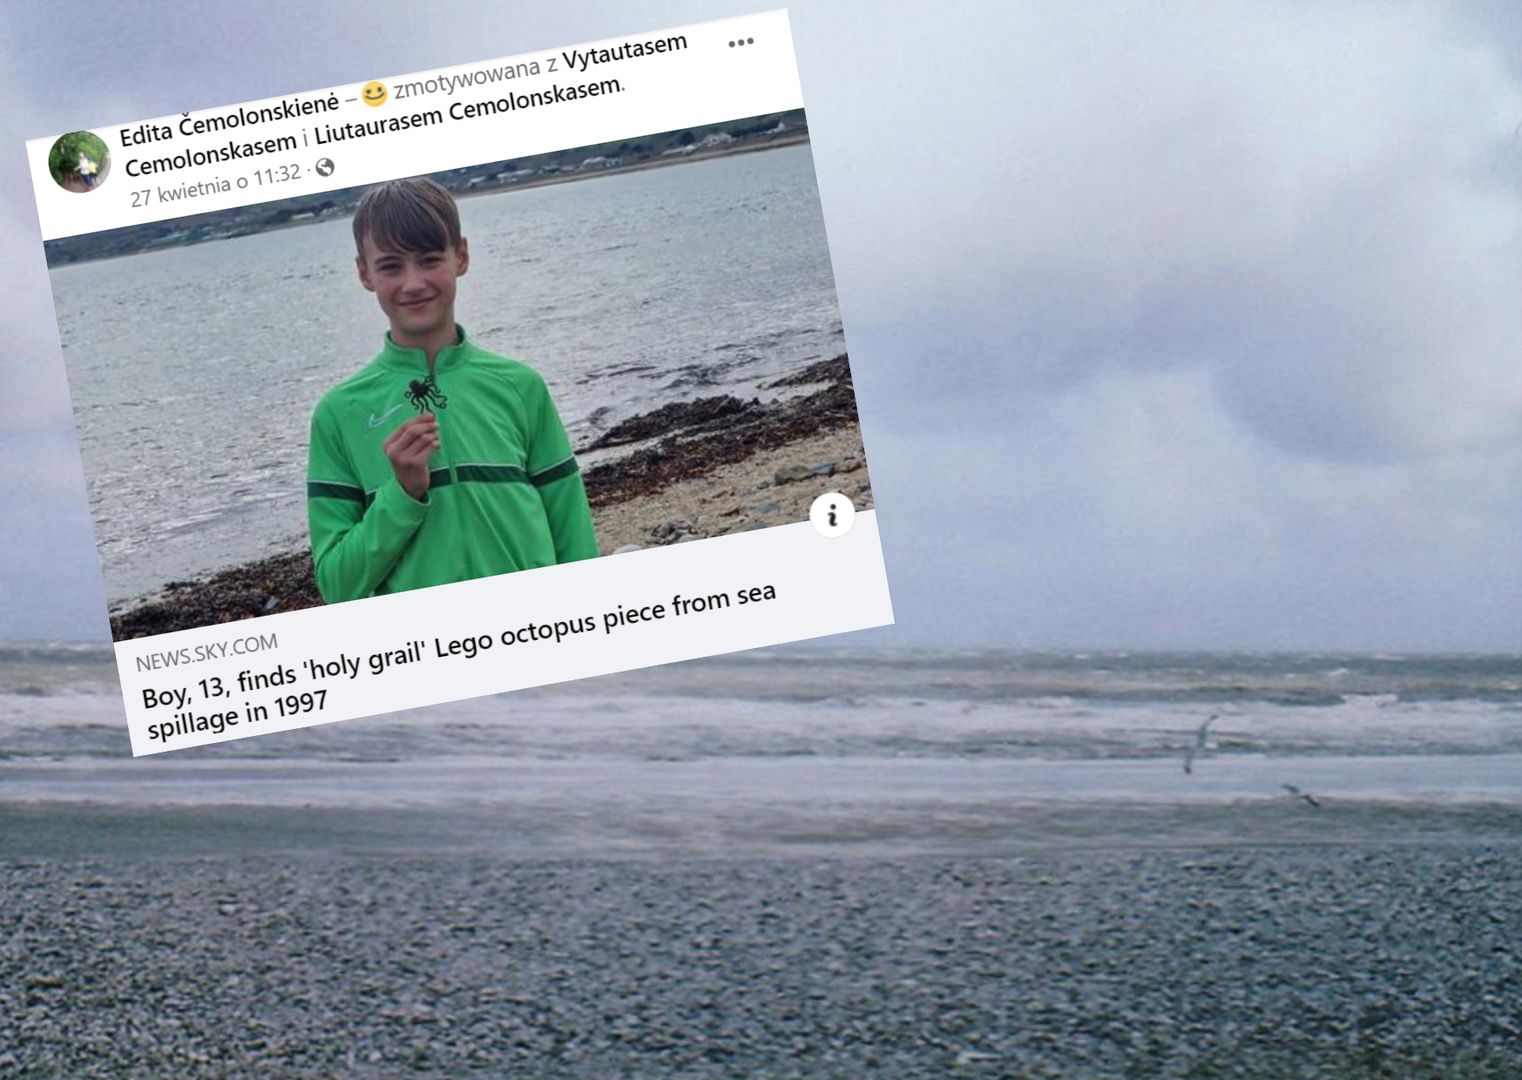 "Święty Graal" kolekcjonerów LEGO. 13-latek znalazł klocek na plaży